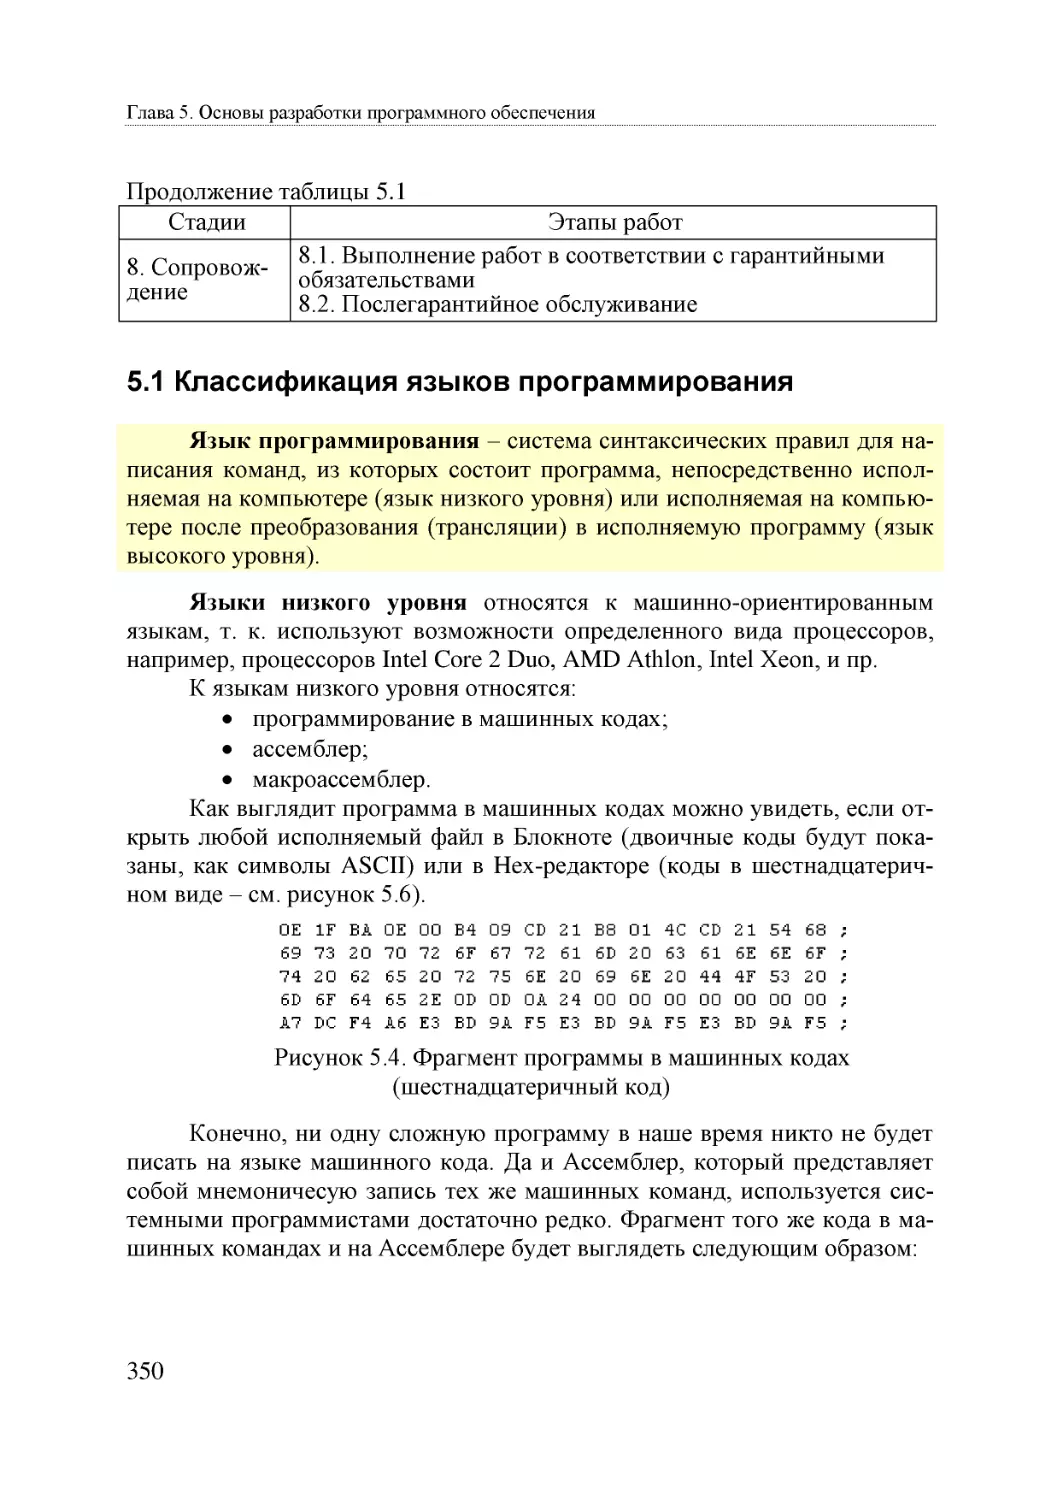 Informatika_Uchebnik_dlya_vuzov_2010 350